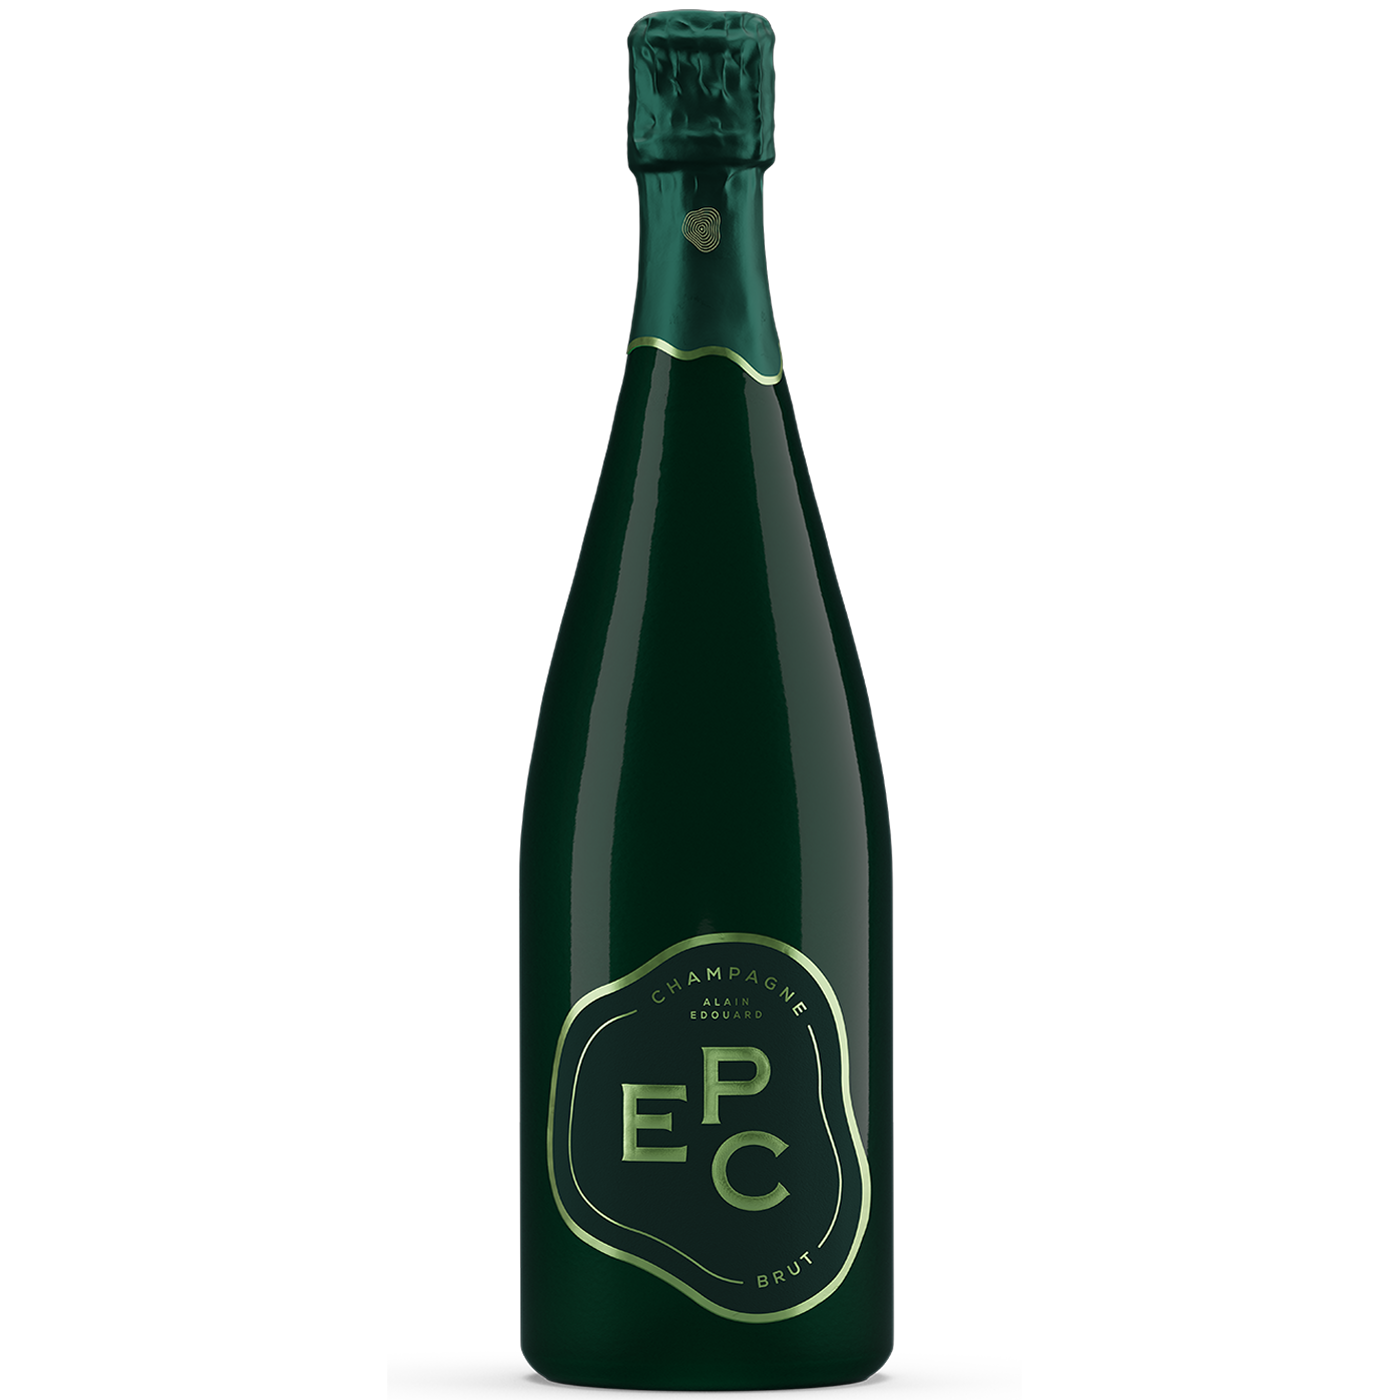 EPC Champagne Brut